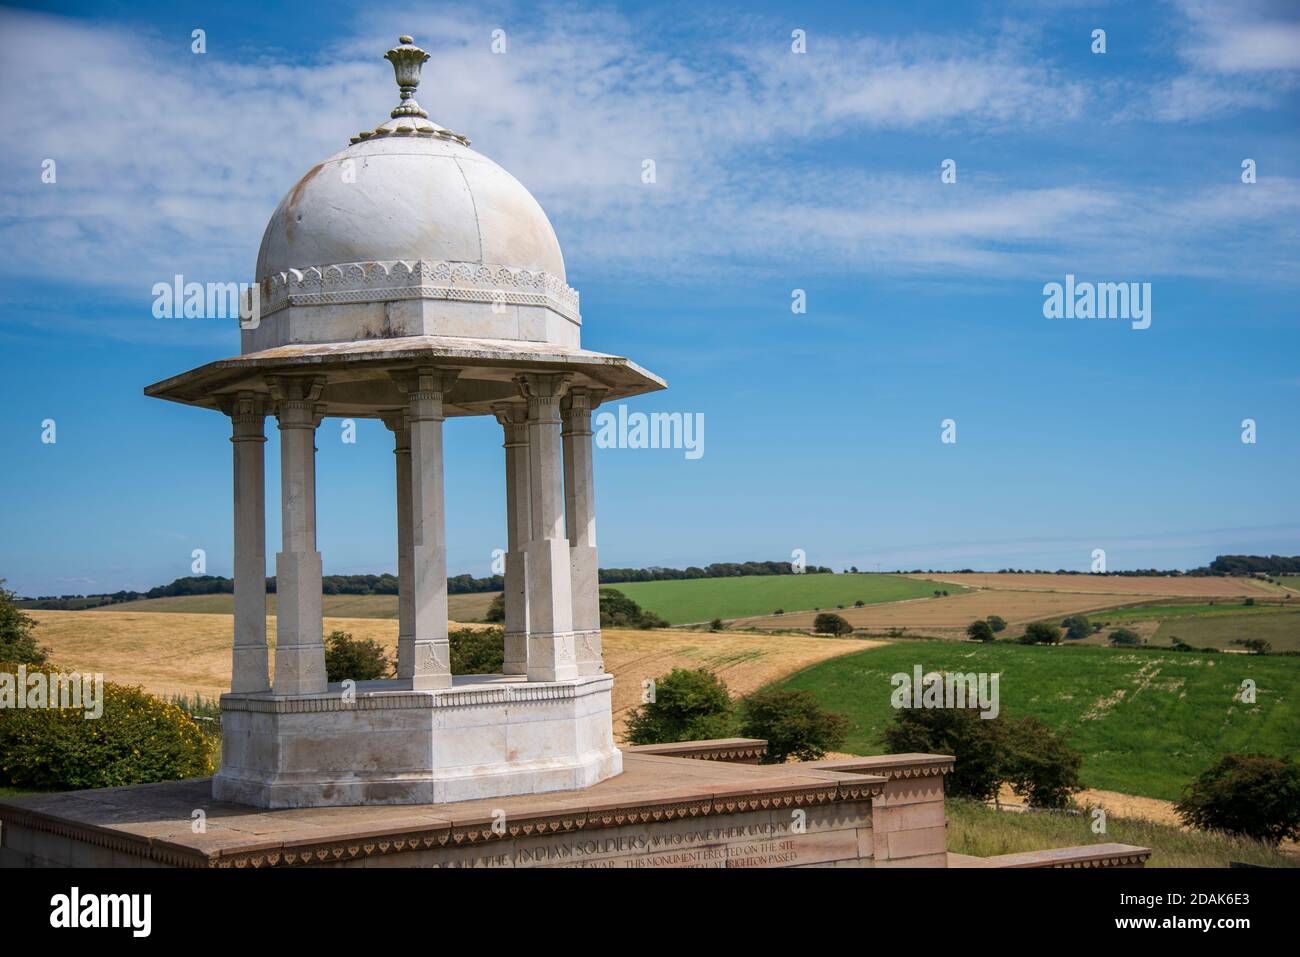 Le mémorial de Chatte, South Downs au-dessus de Patcham à Brighton. Pris un jour d'été. Banque D'Images